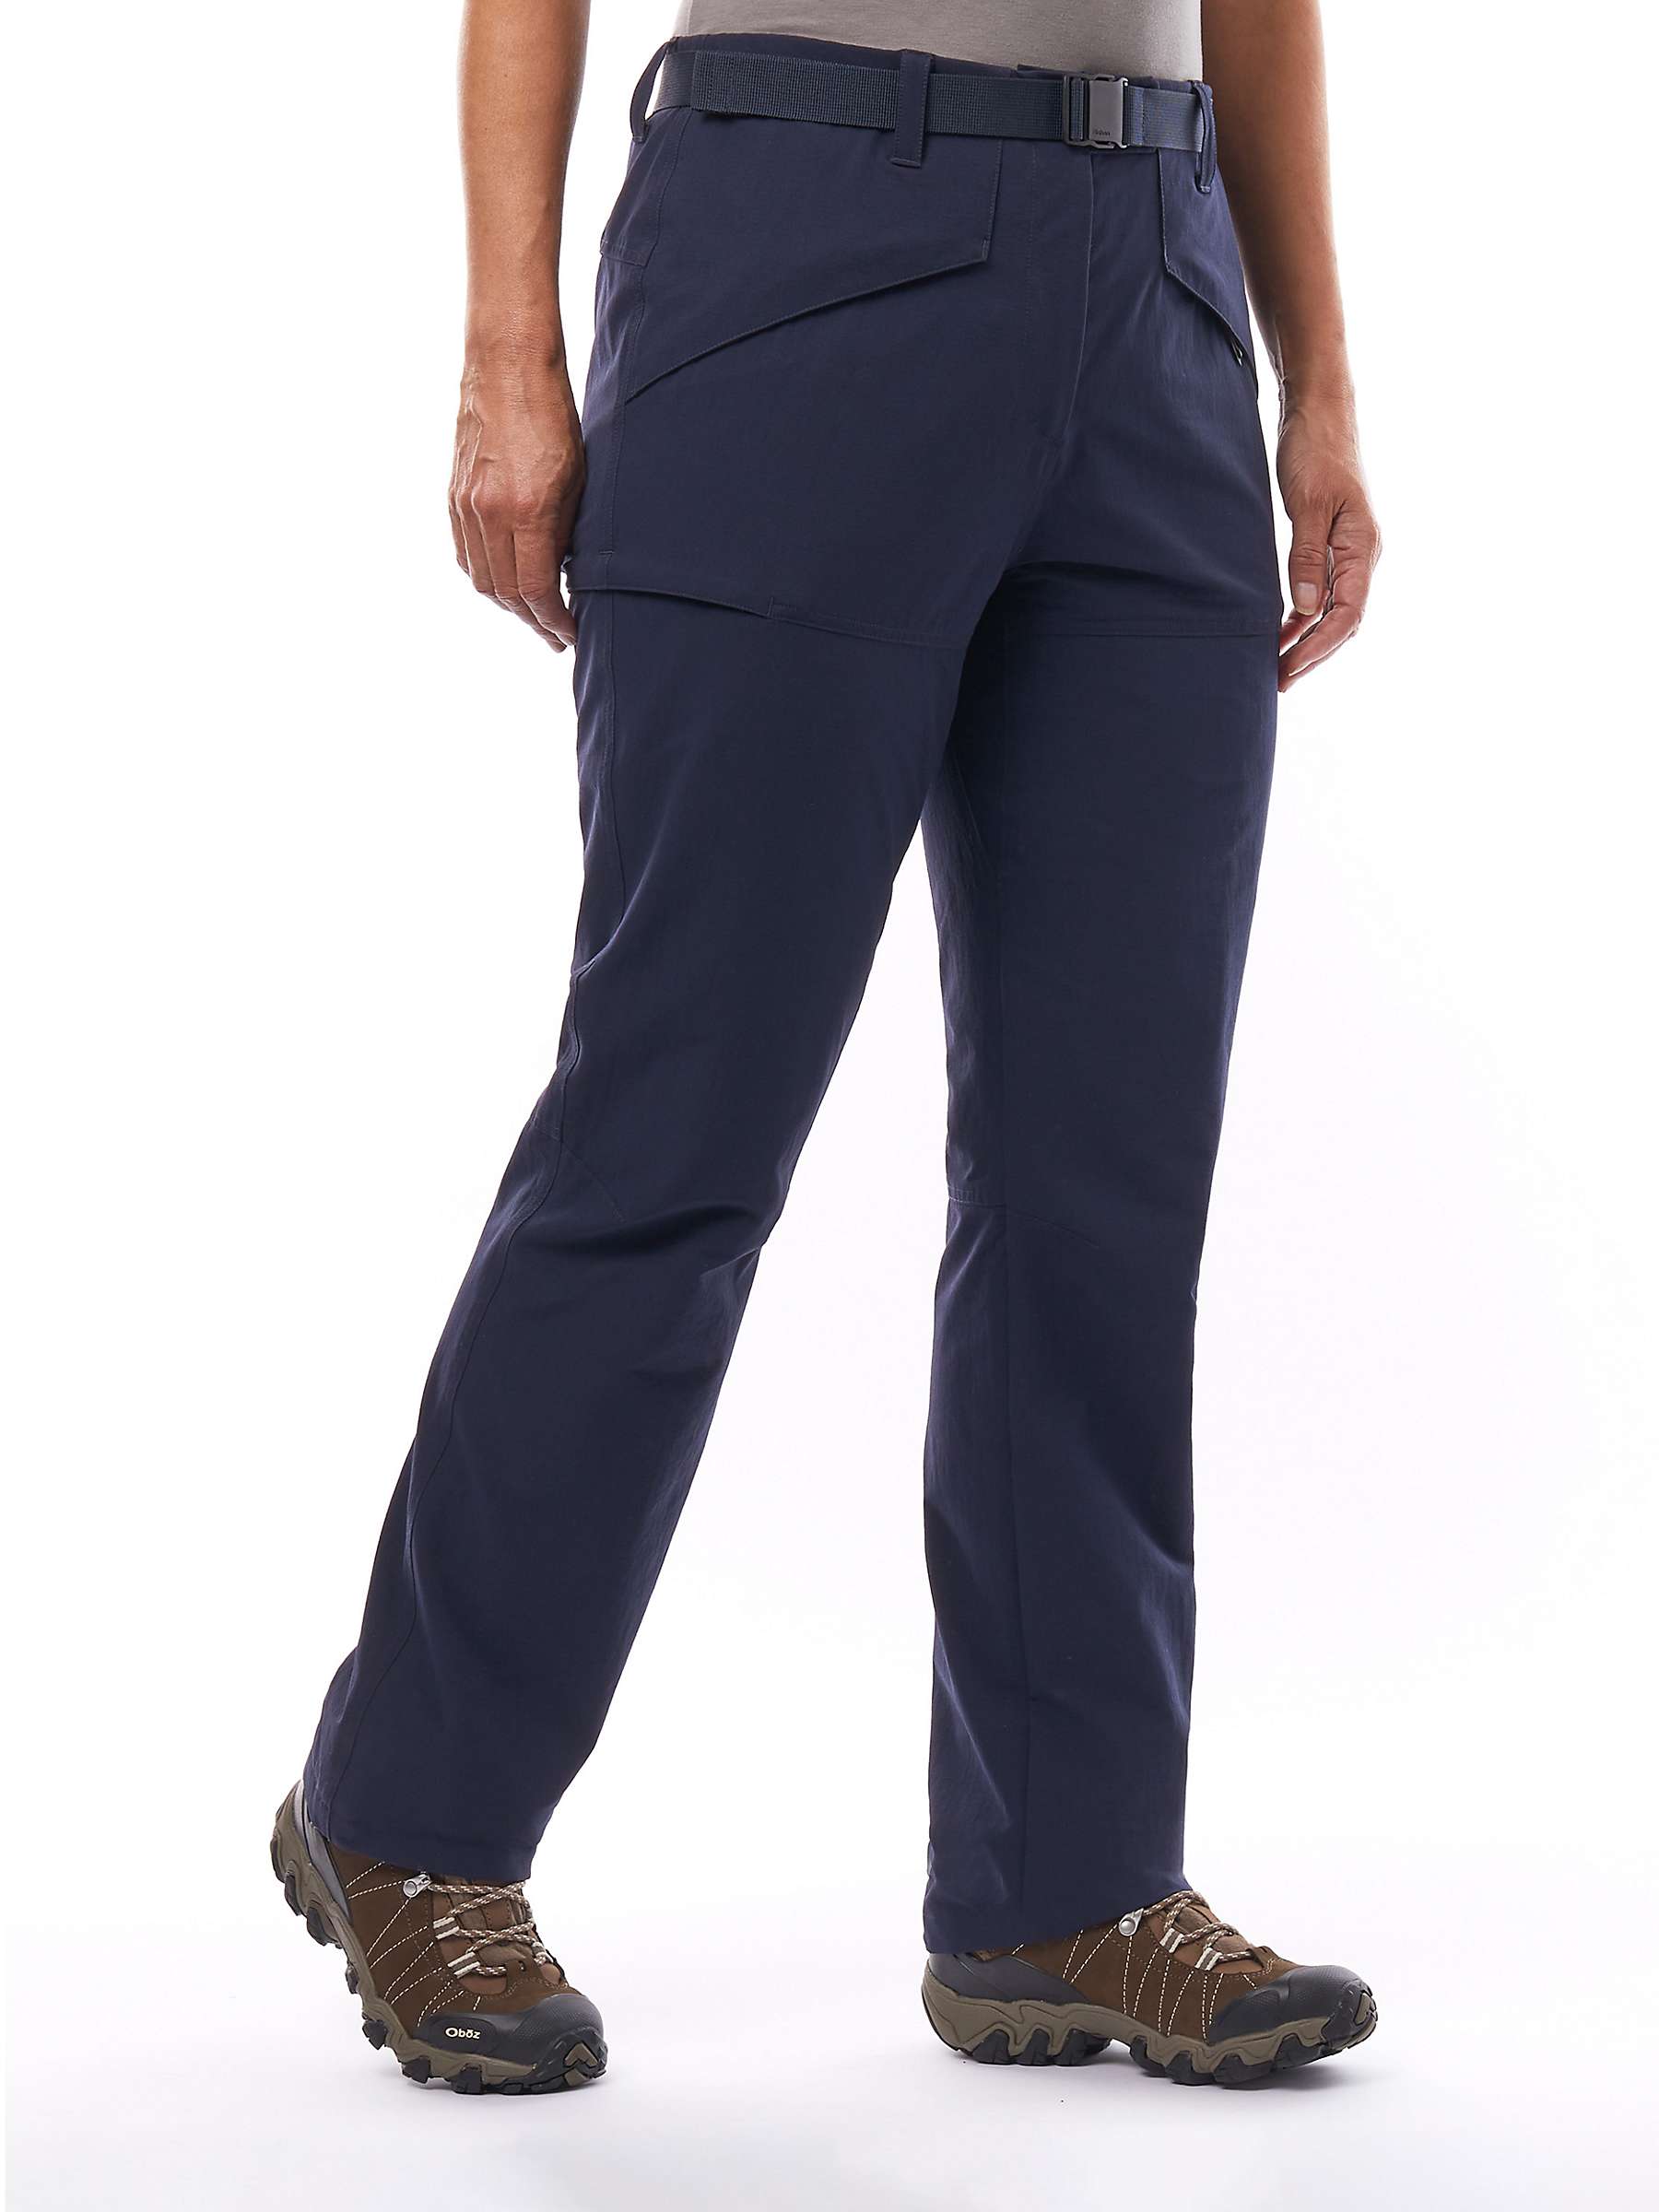 Buy Rohan Dry Ranger Waterproof Trousers, True Navy Online at johnlewis.com